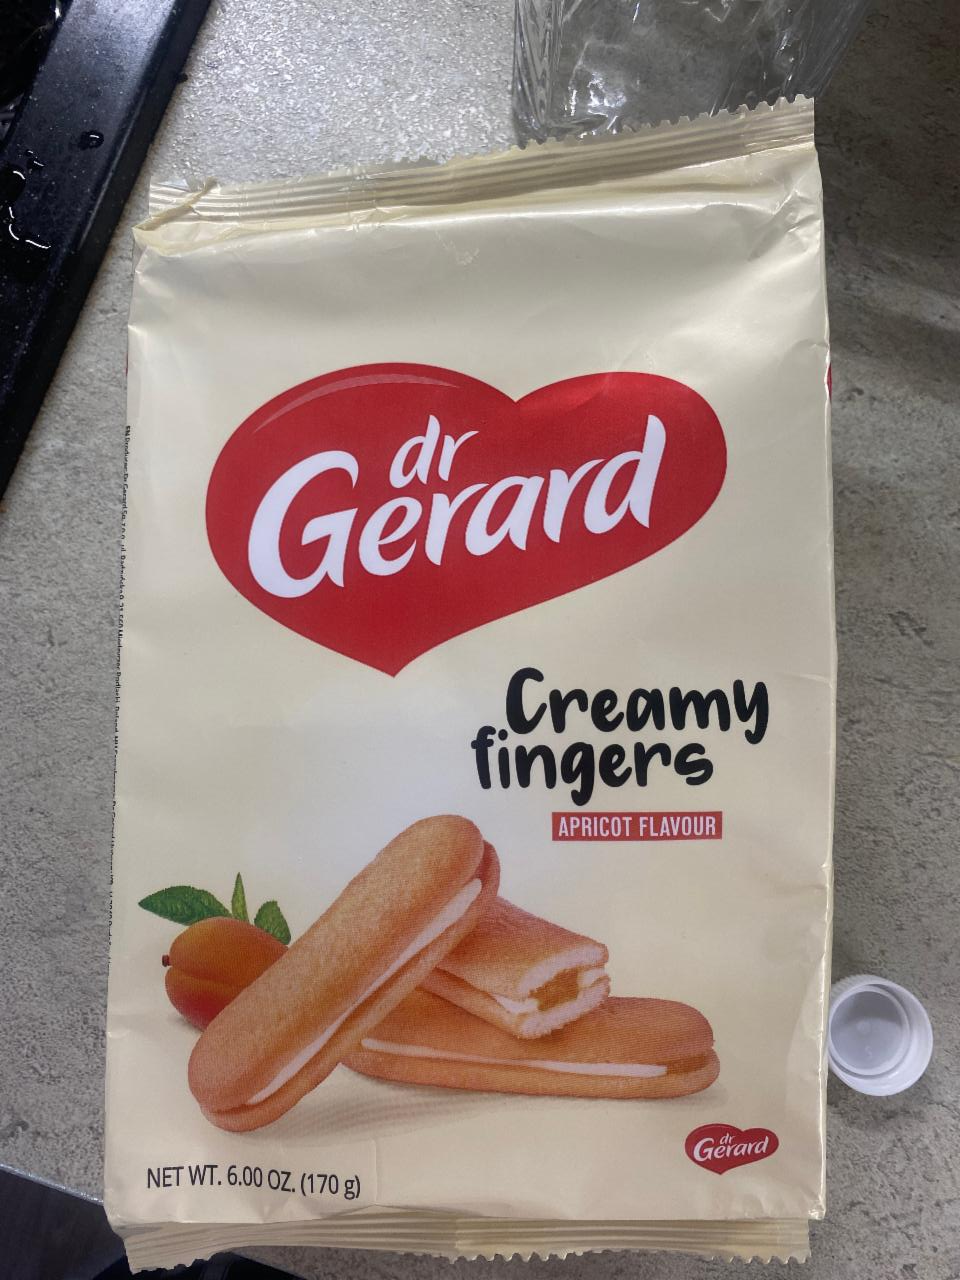 Fotografie - Creamy Fingers Apricot Flavour dr Gerard